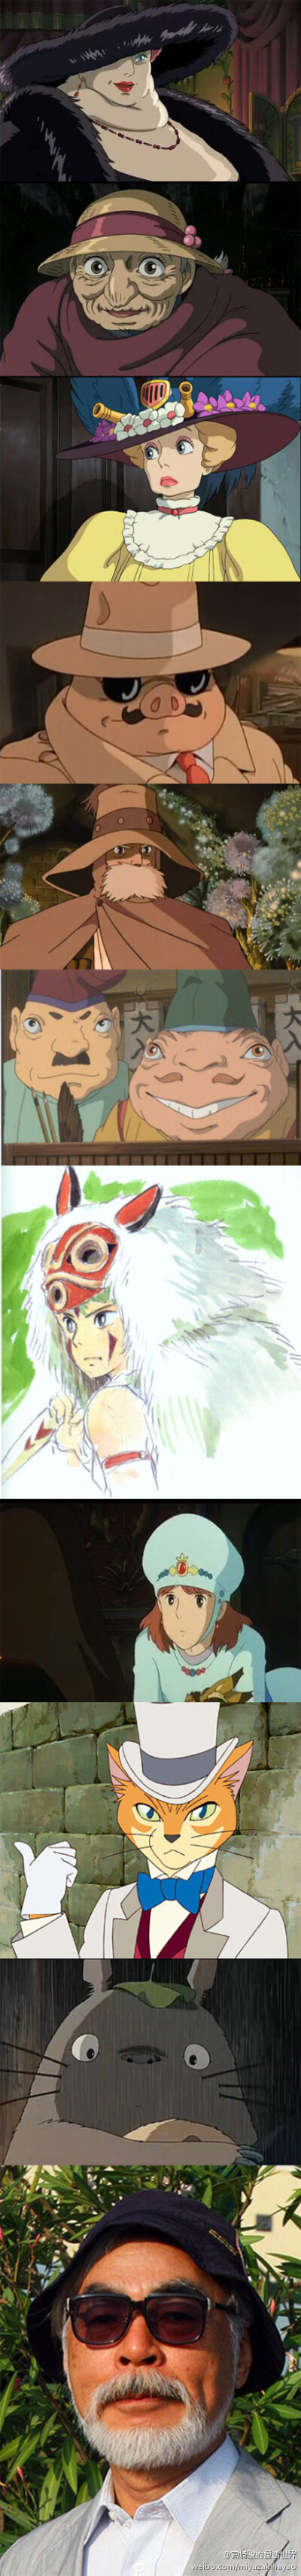 宫崎骏动画人物中出现的各式各样的帽子~最后一张笑啦